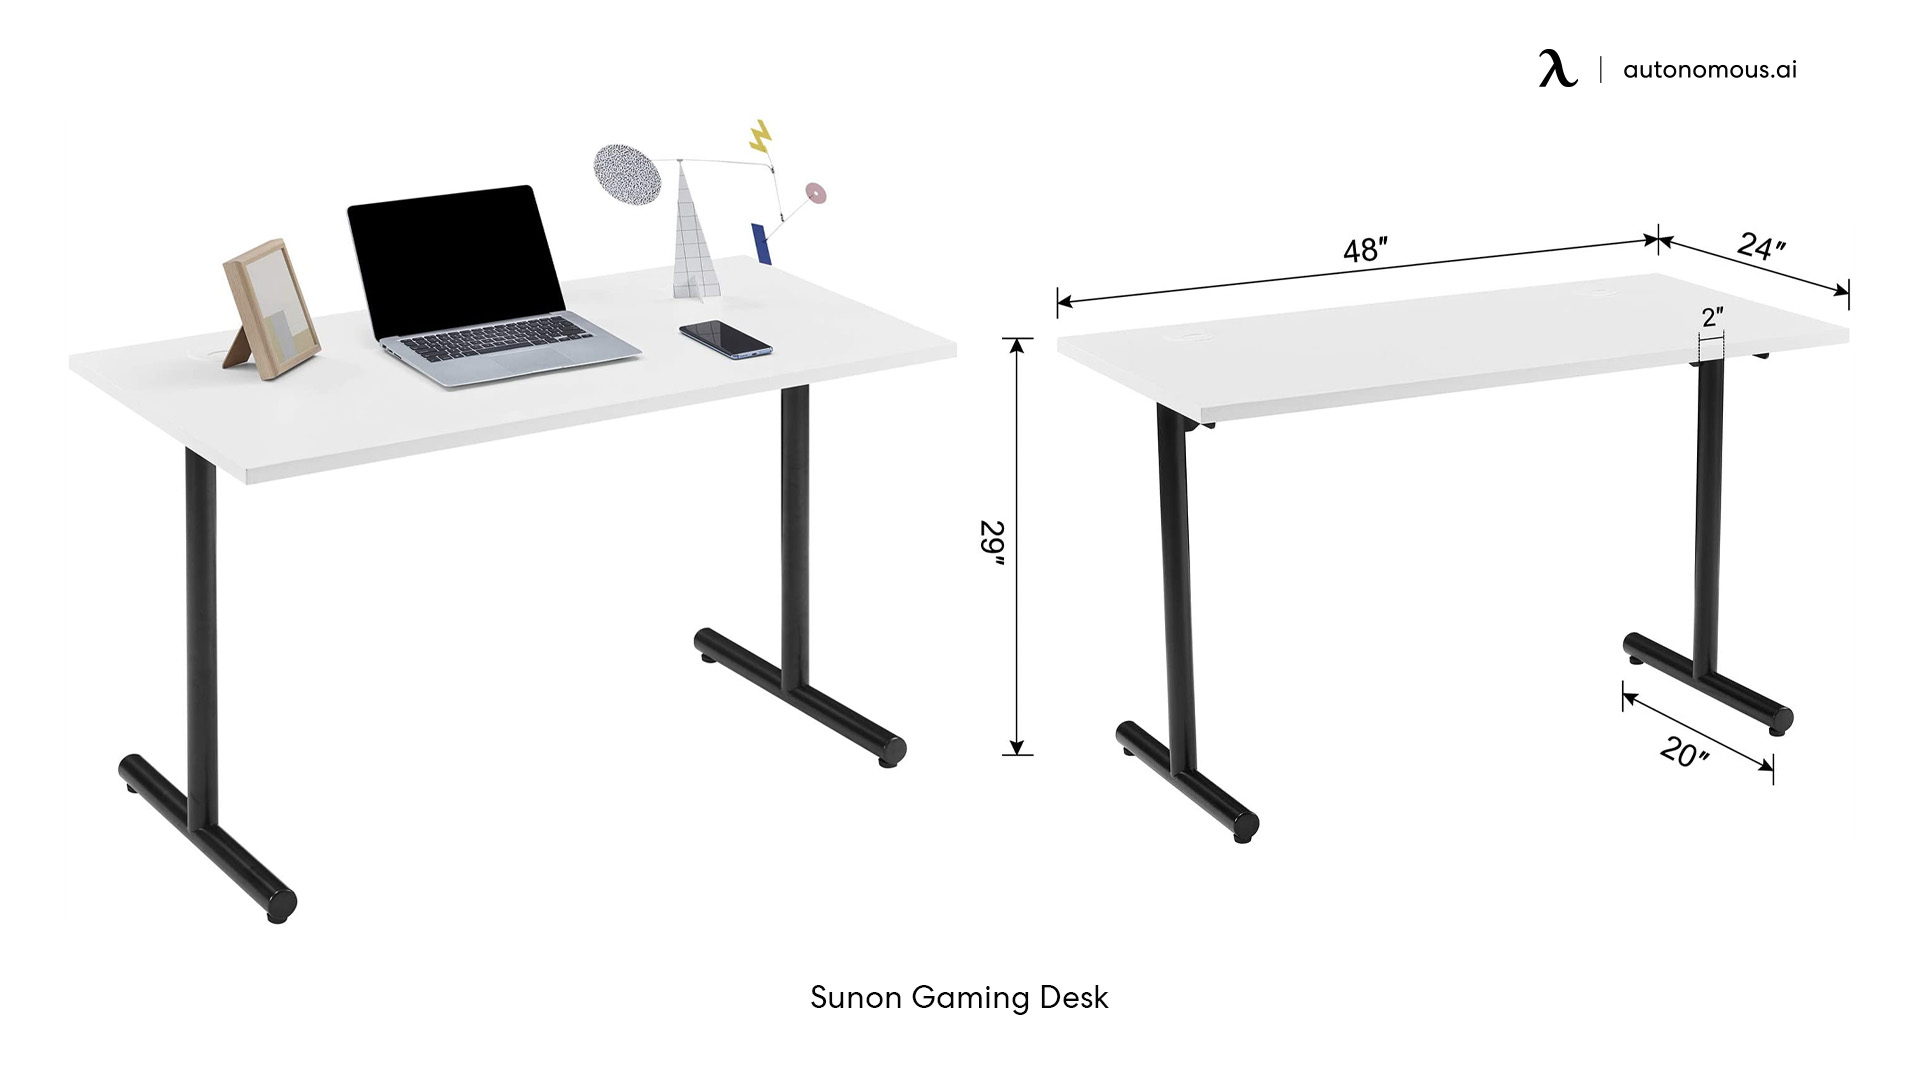 Sunon white desk with black legs